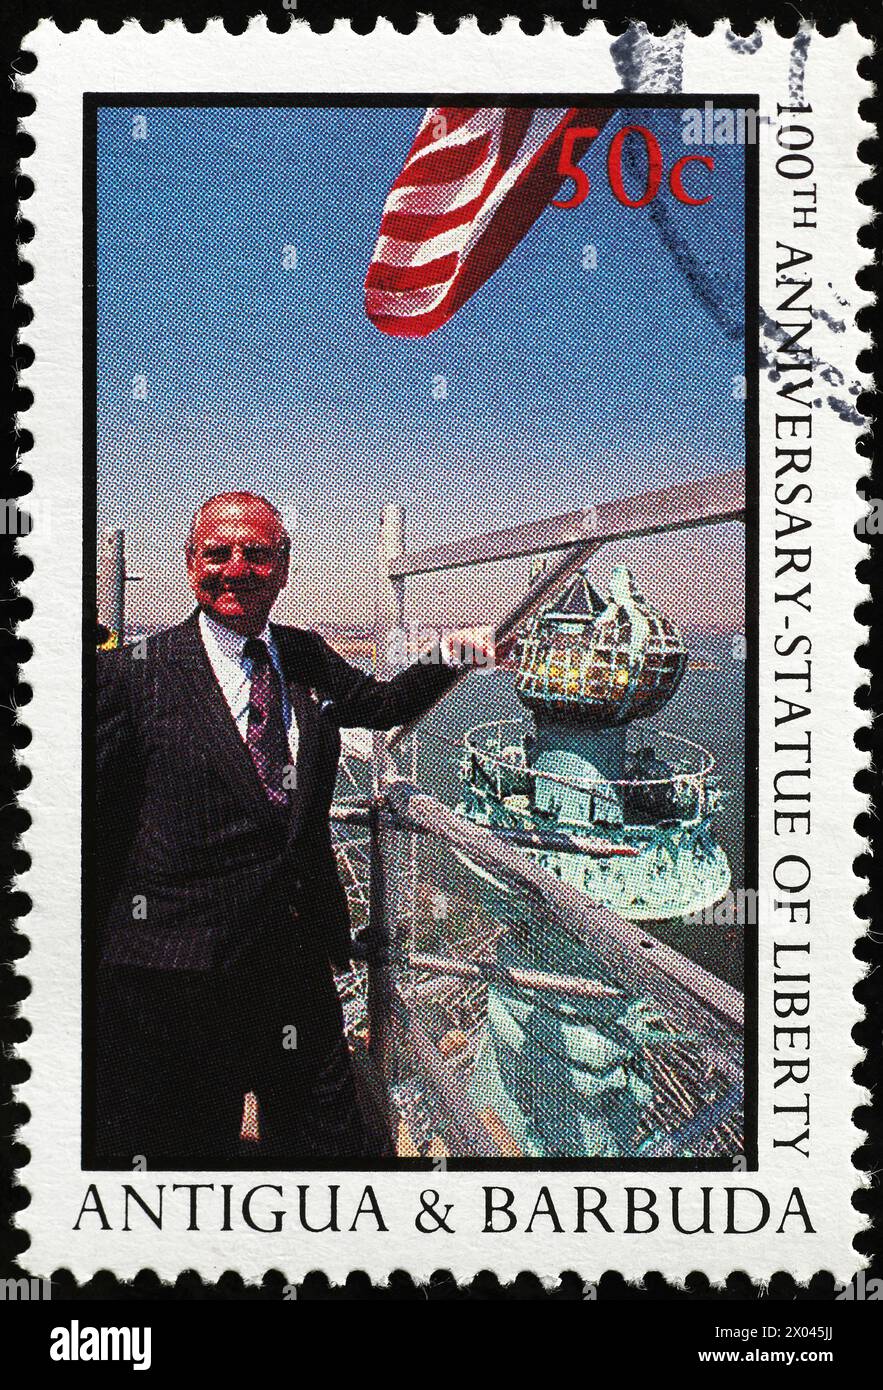 100ème anniversaire de la Statue de la liberté célébré sur timbre-poste Banque D'Images